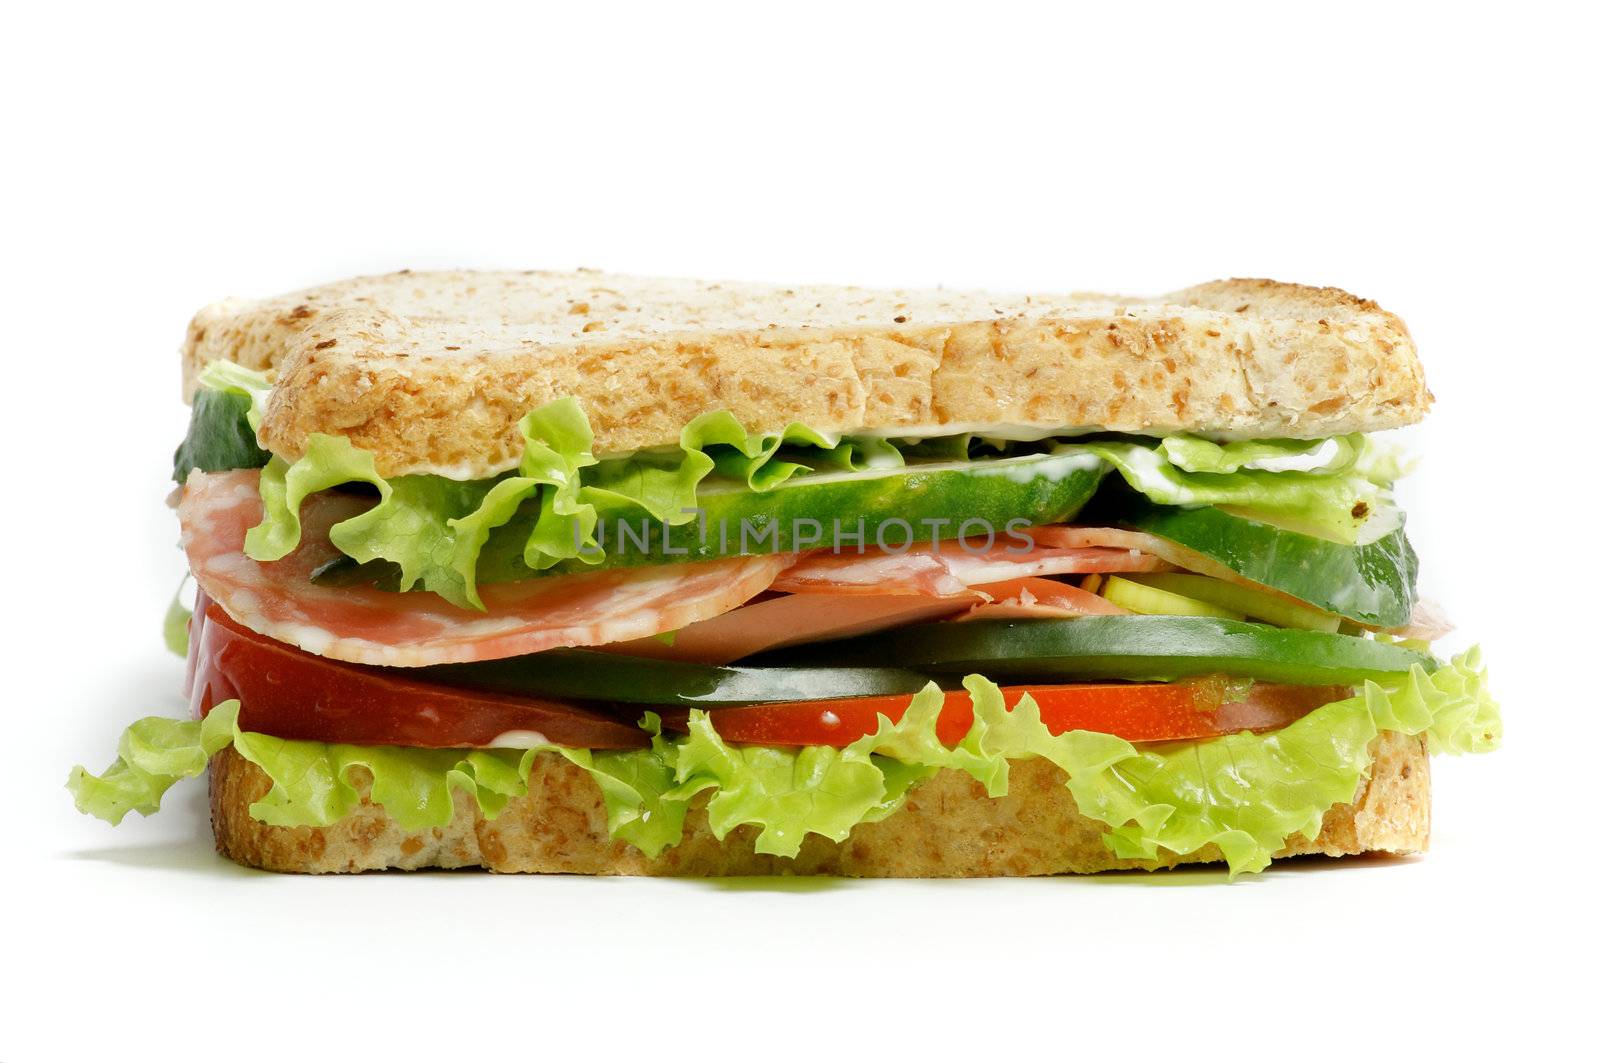 Grand Sandwich by zhekos